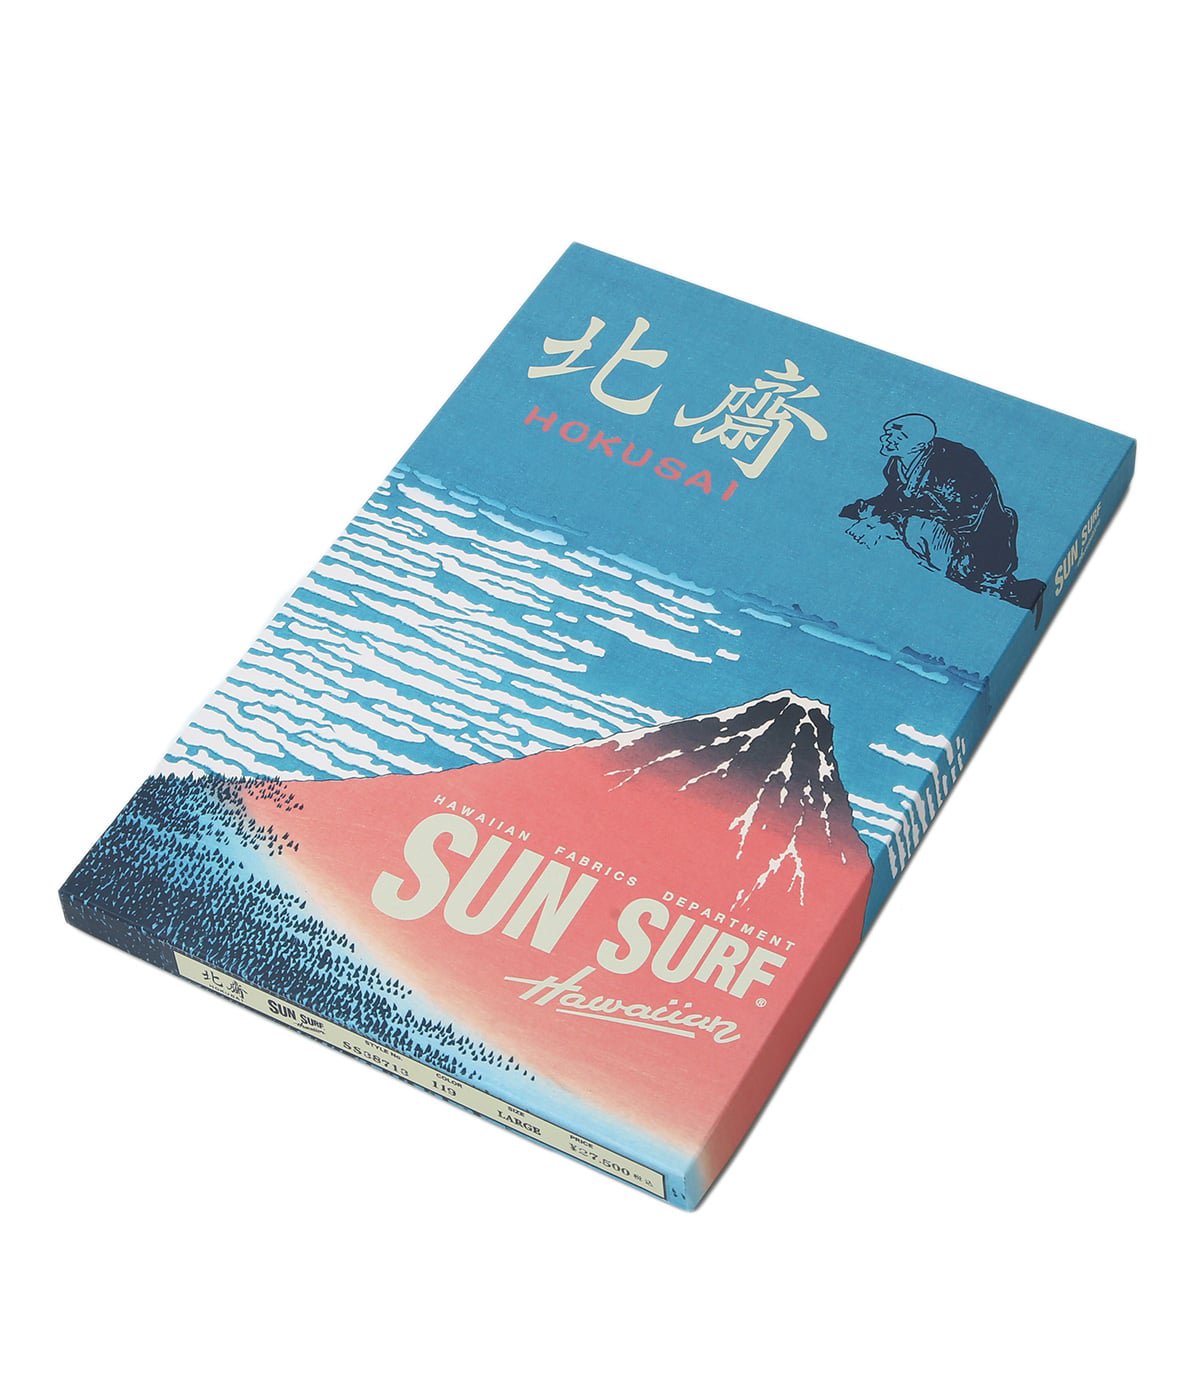 Sun Surf - SUN SURF サンサーフ スペシャル 東洋 葛飾北斎 